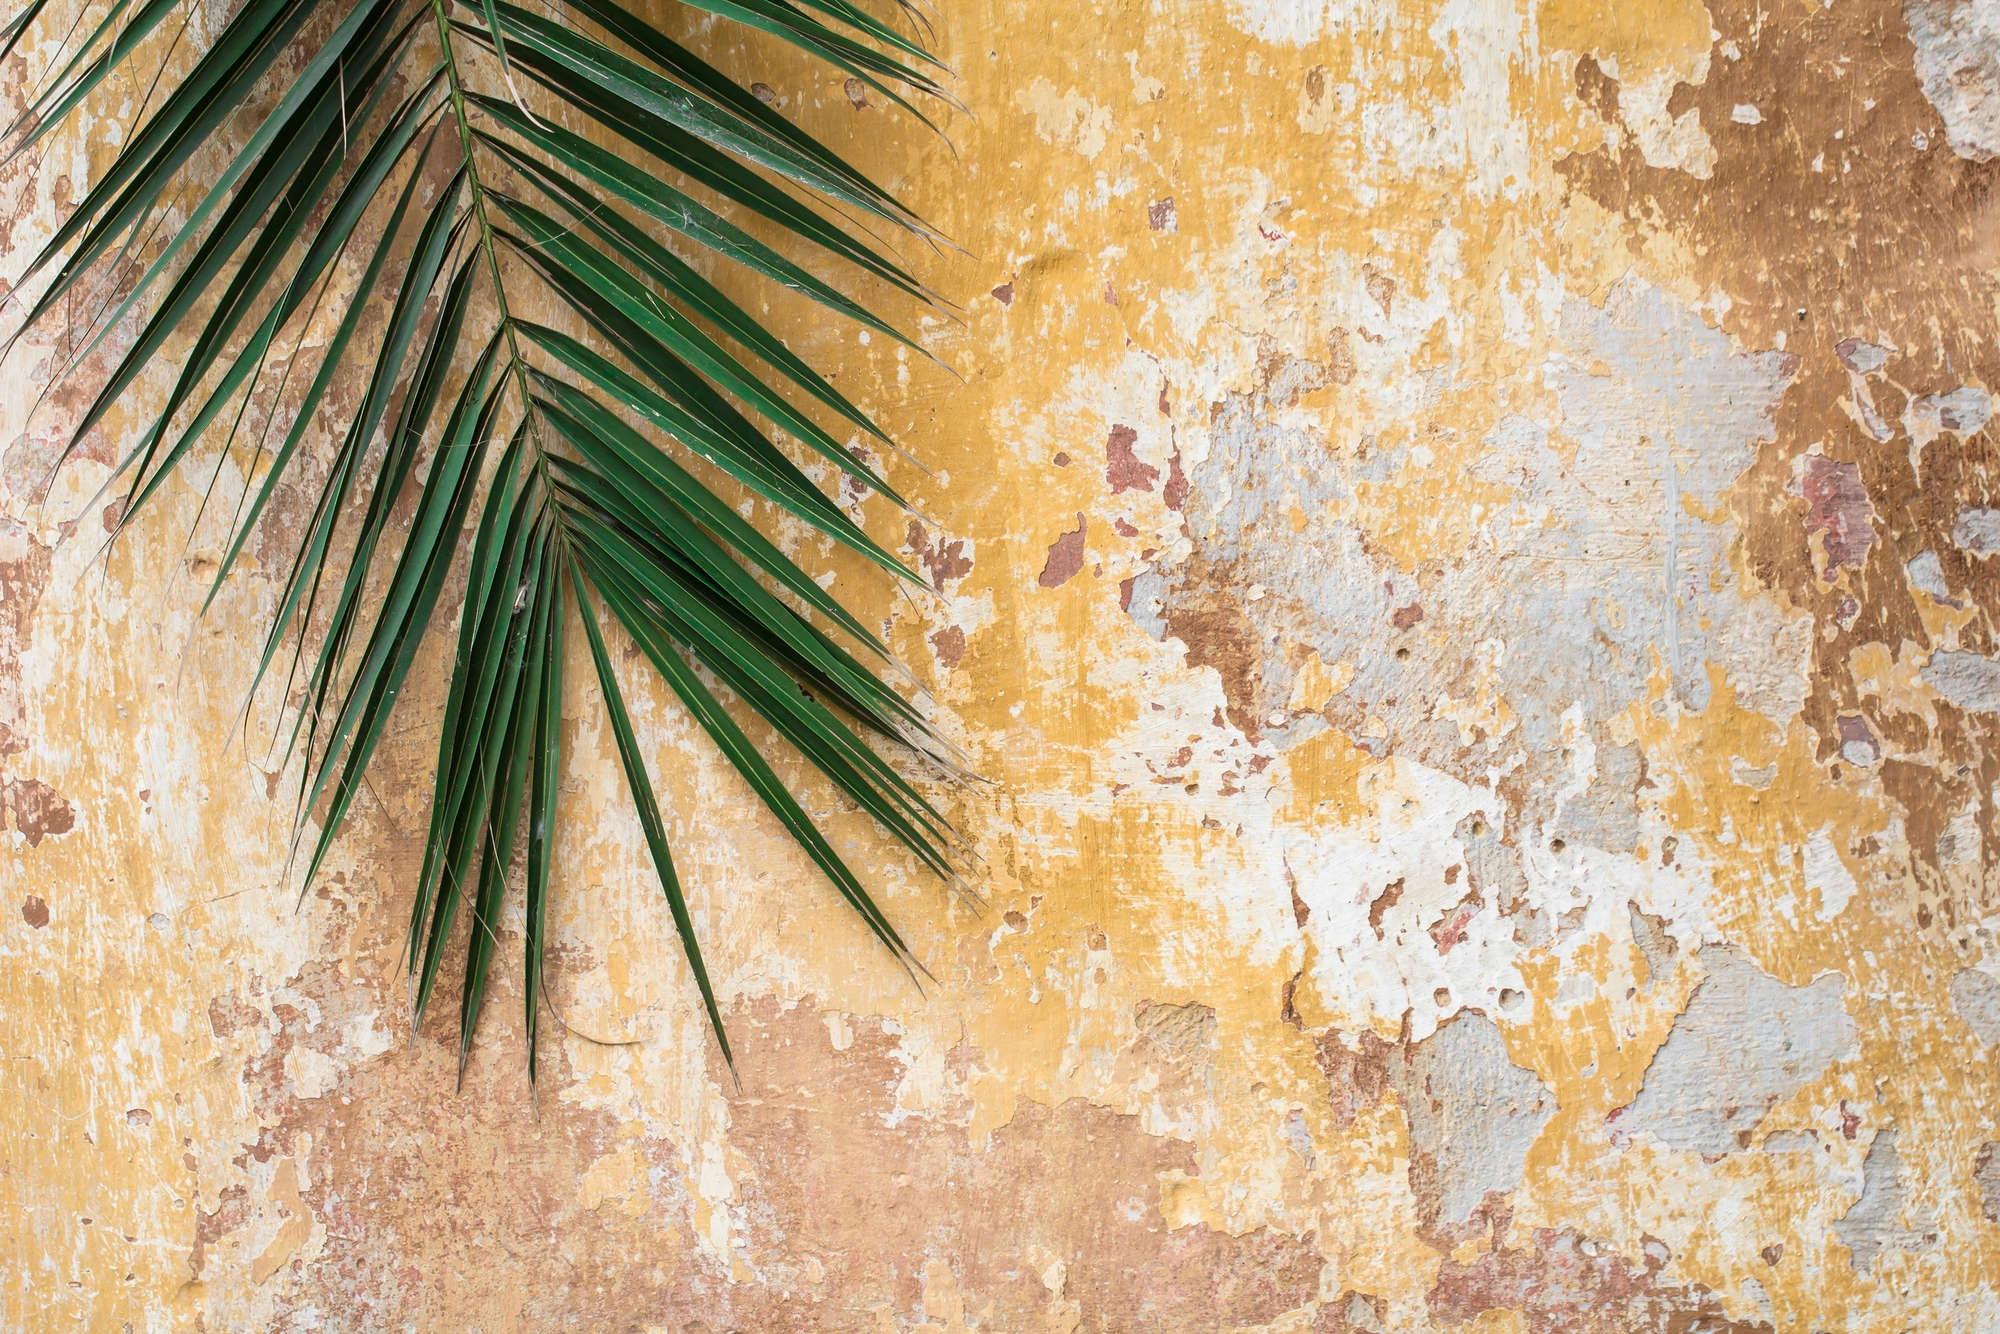             Natura murale di foglie di palma davanti a un muro di pietra su tessuto non tessuto testurizzato
        